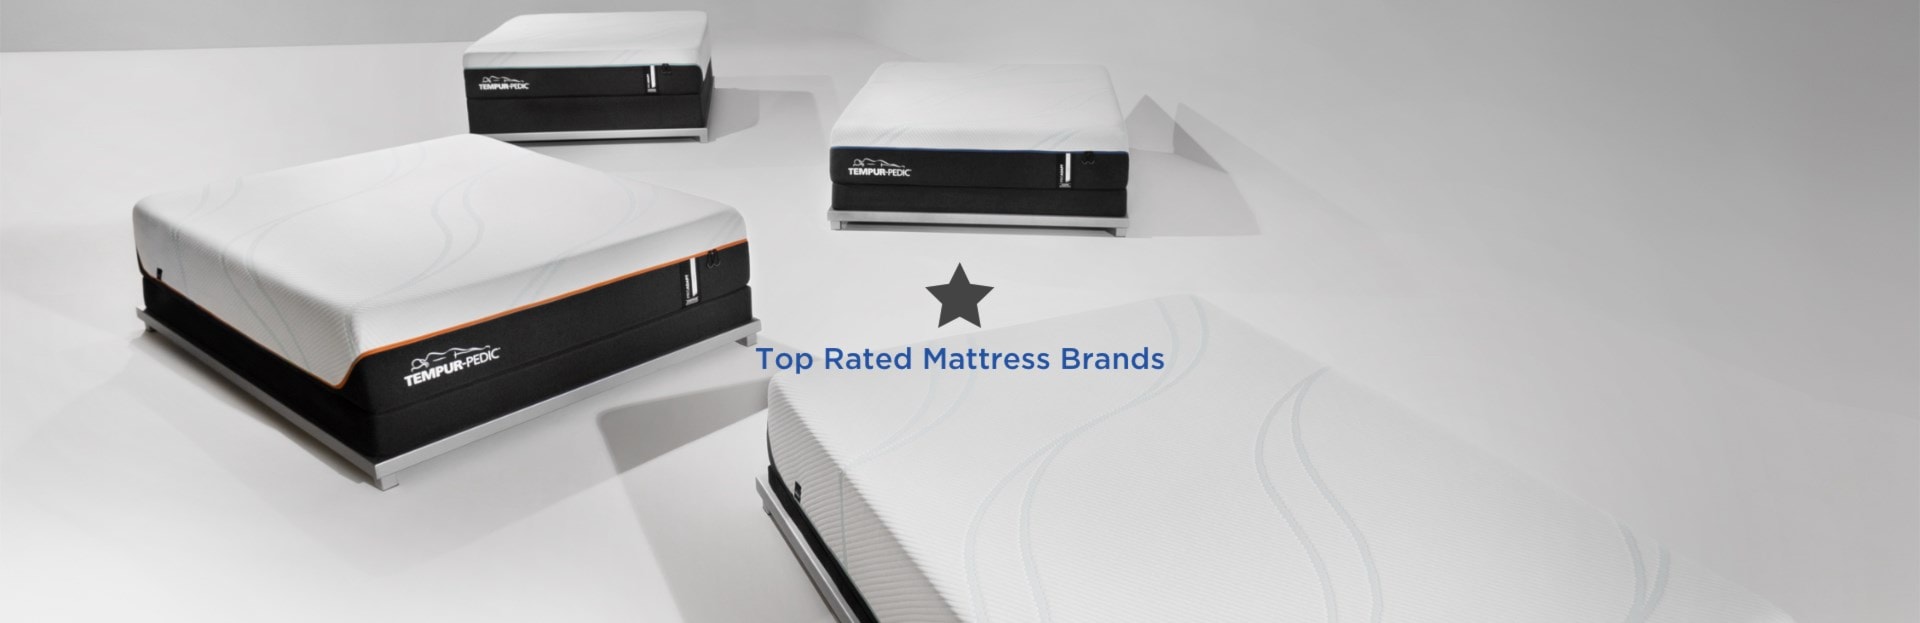 Top Rated Mattress Brands